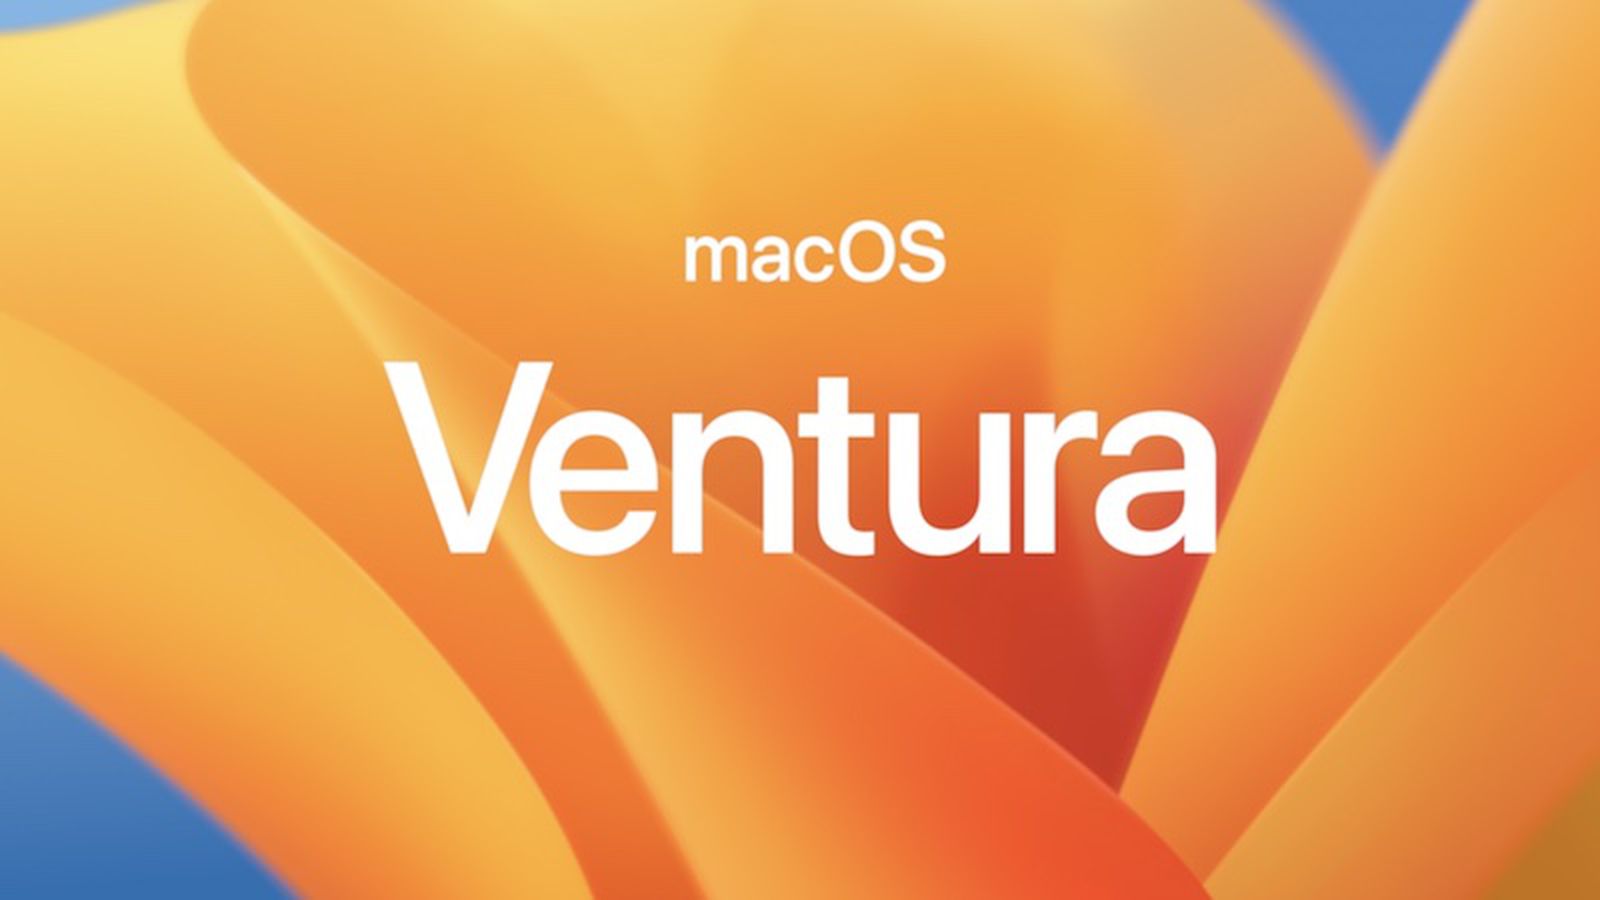 macOS Ventura выйдет в октябре, а общая фотобиблиотека iCloud – только в конце года